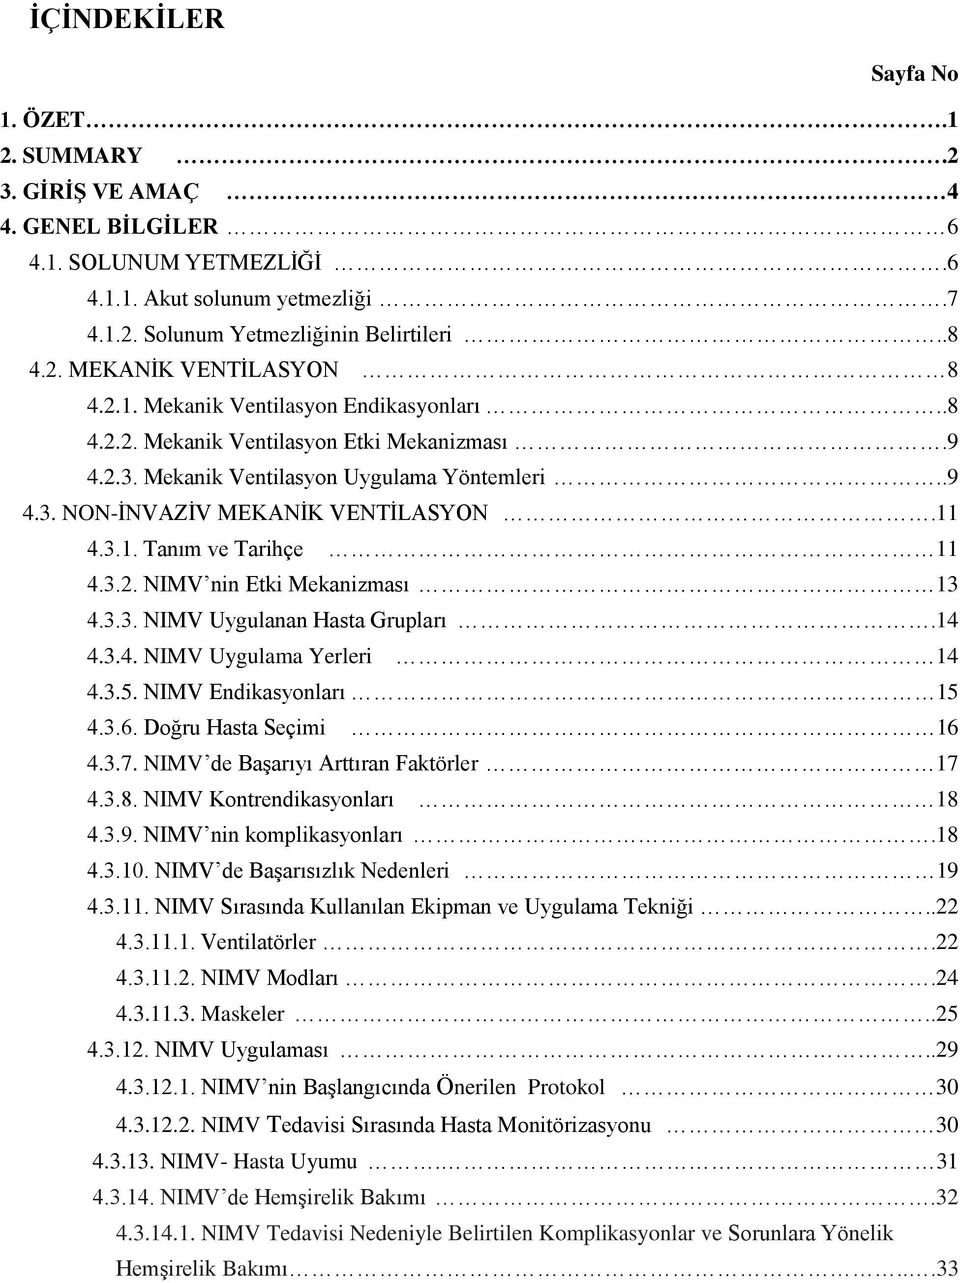 3.2. NIMV nin Etki Mekanizması 13 4.3.3. NIMV Uygulanan Hasta Grupları.14 4.3.4. NIMV Uygulama Yerleri 14 4.3.5. NIMV Endikasyonları 15 4.3.6. Doğru Hasta Seçimi 16 4.3.7.